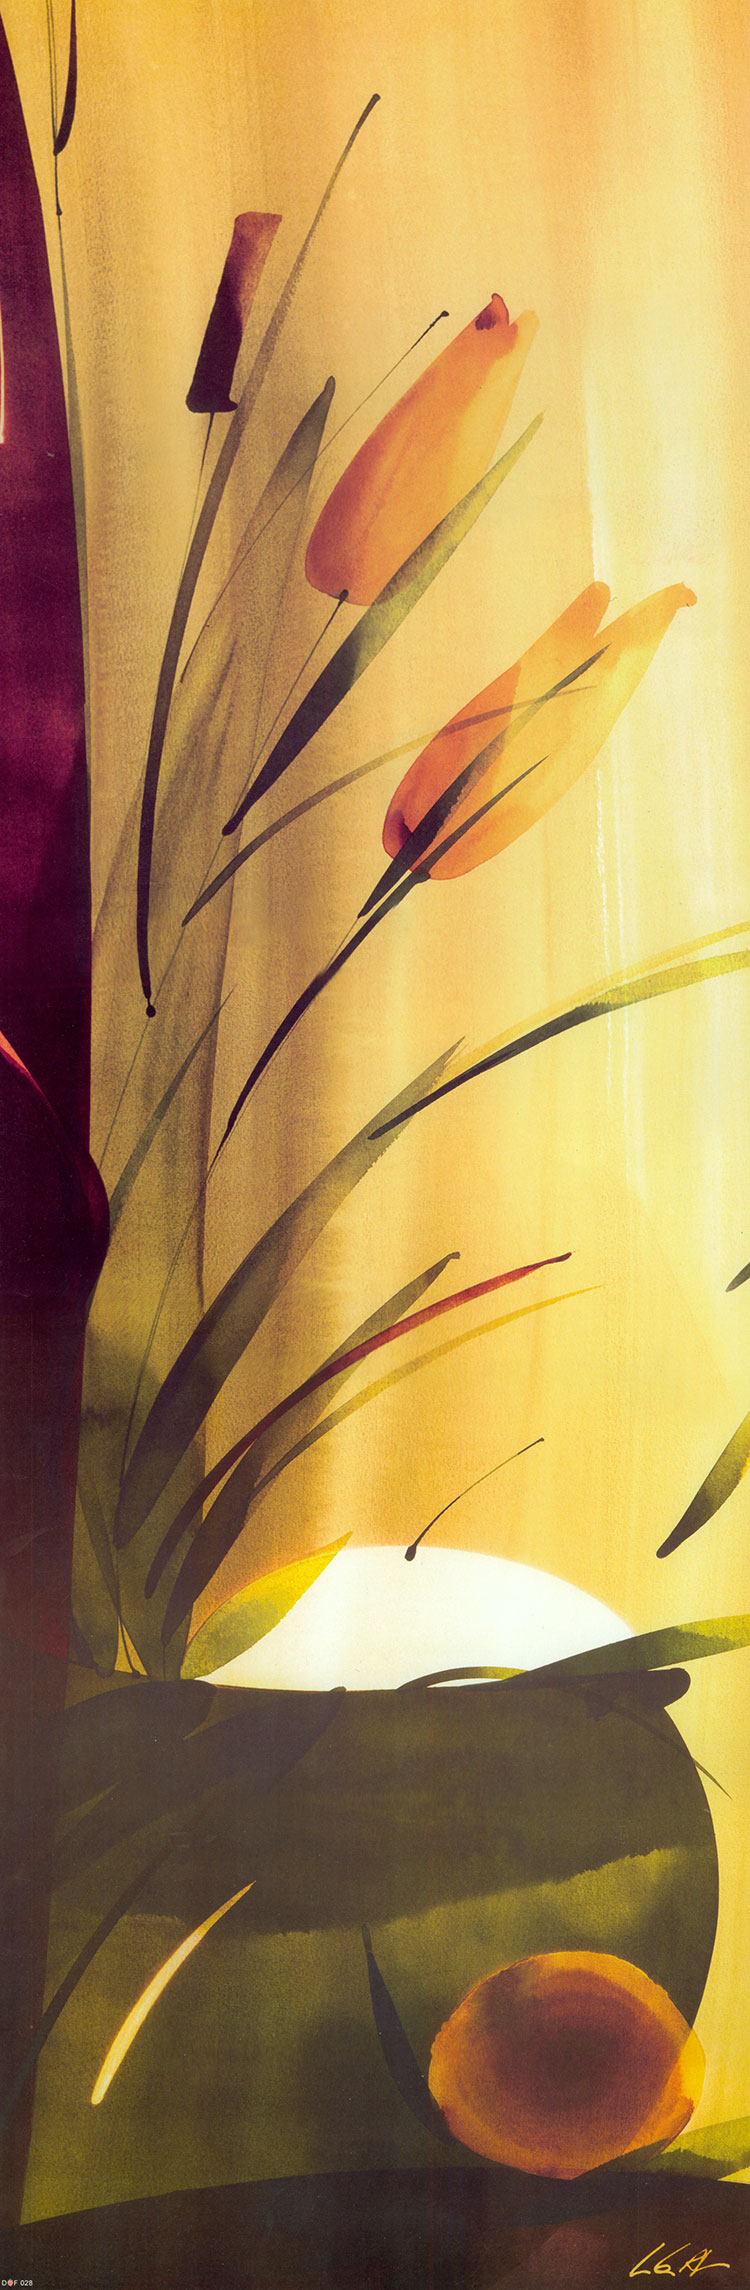 现代简约水彩装饰画素材: 花卉水彩画高清大图下载 A